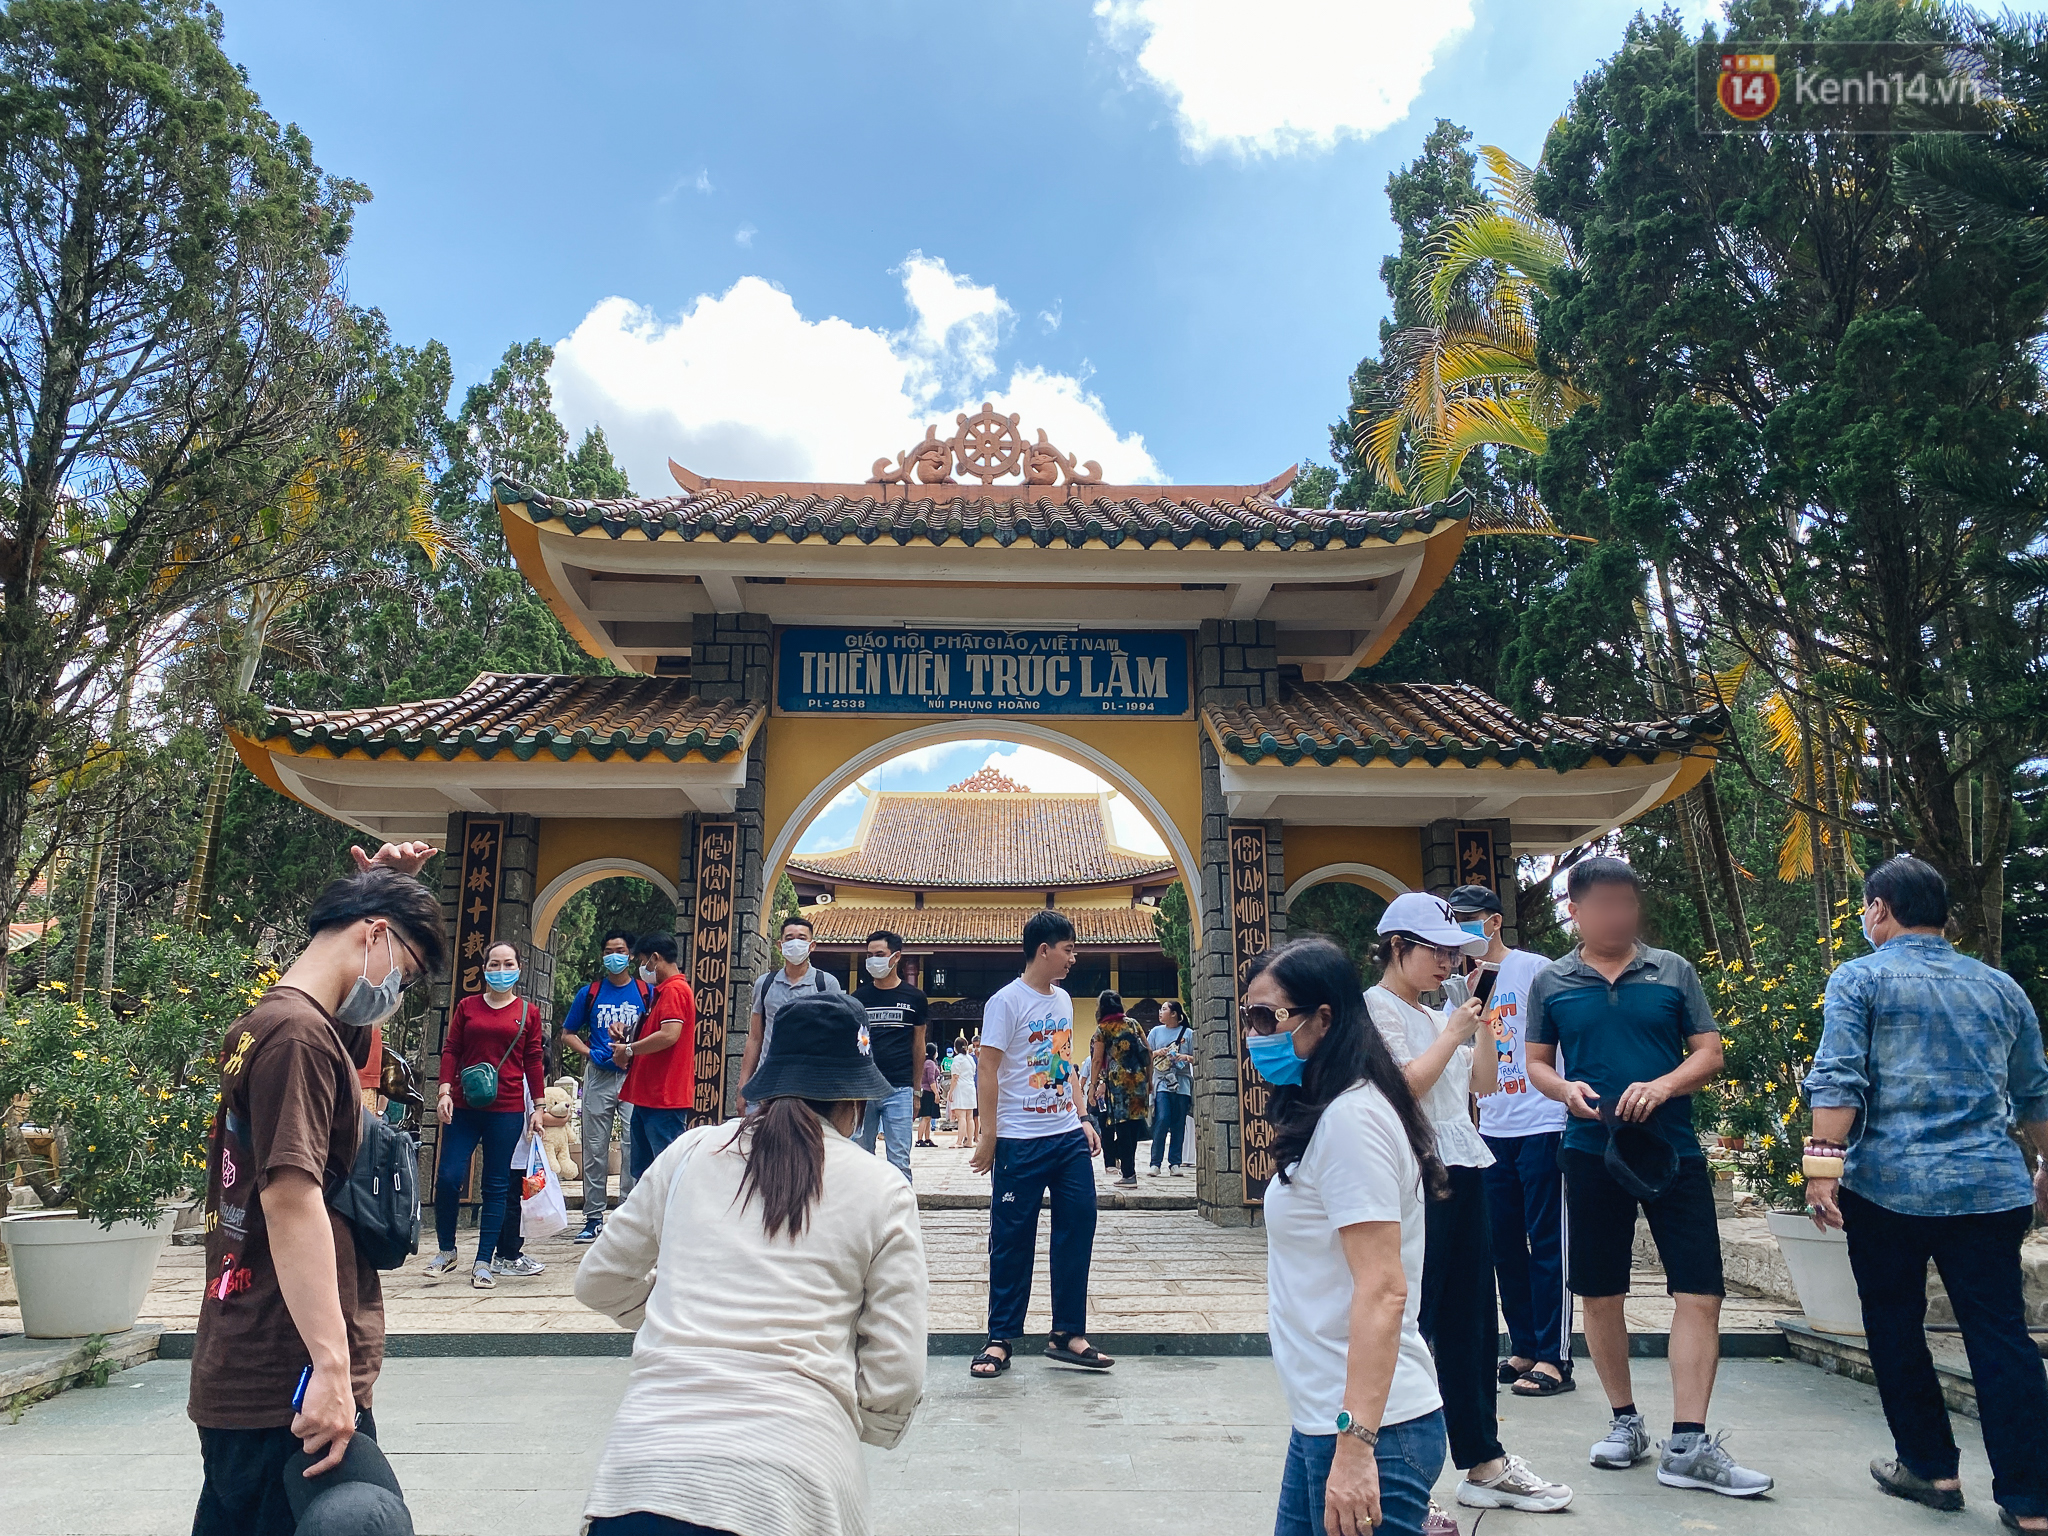 Thiền viện Trúc Lâm ở Đà Lạt chật kín du khách, nhiều người mặc quần ngắn, không đeo khẩu khẩu trang  - Ảnh 1.